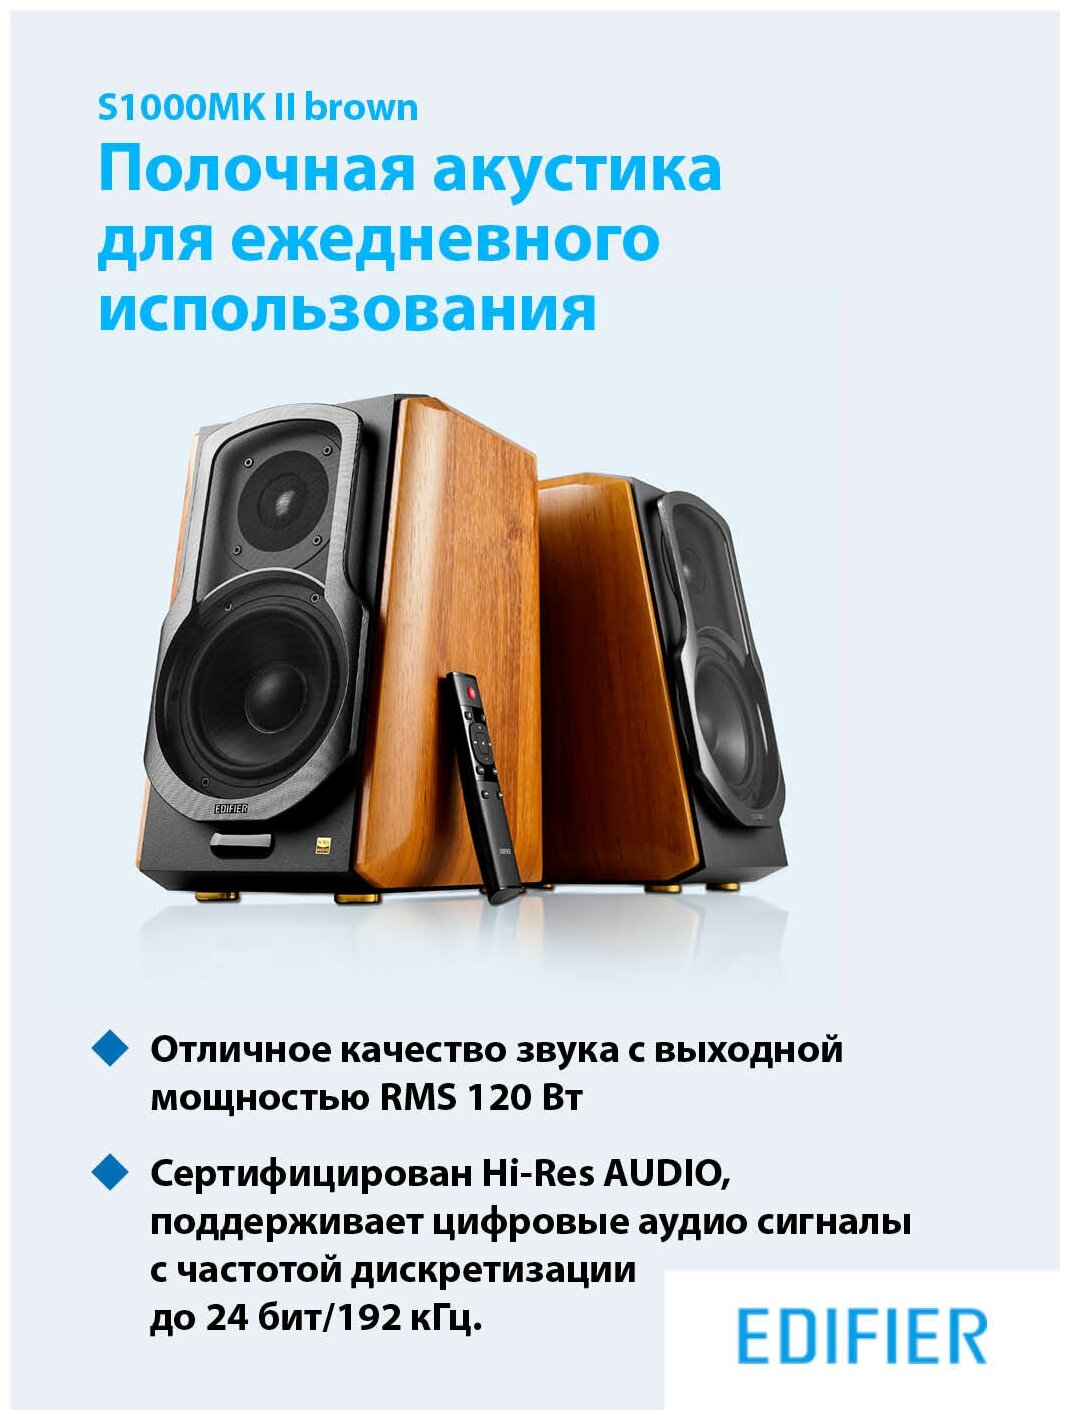 Аудиосистема EDIFIER S1000MK II brown